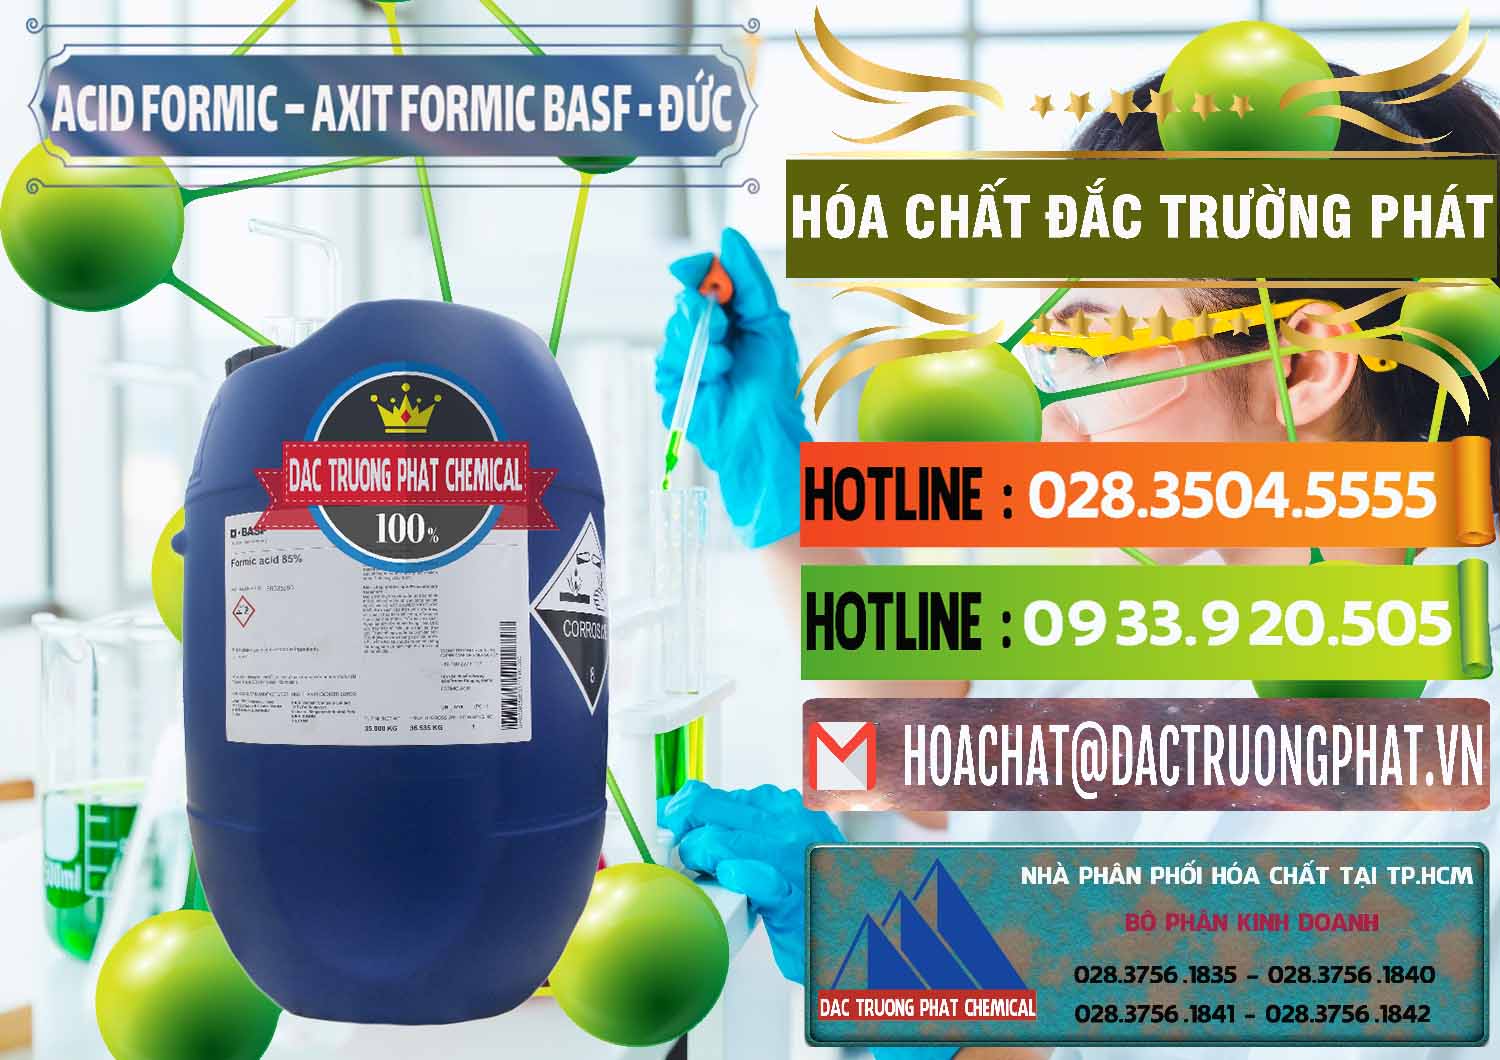 Chuyên cung ứng & bán Acid Formic - Axit Formic BASF Đức Germany - 0028 - Phân phối ( bán ) hóa chất tại TP.HCM - cungcaphoachat.com.vn